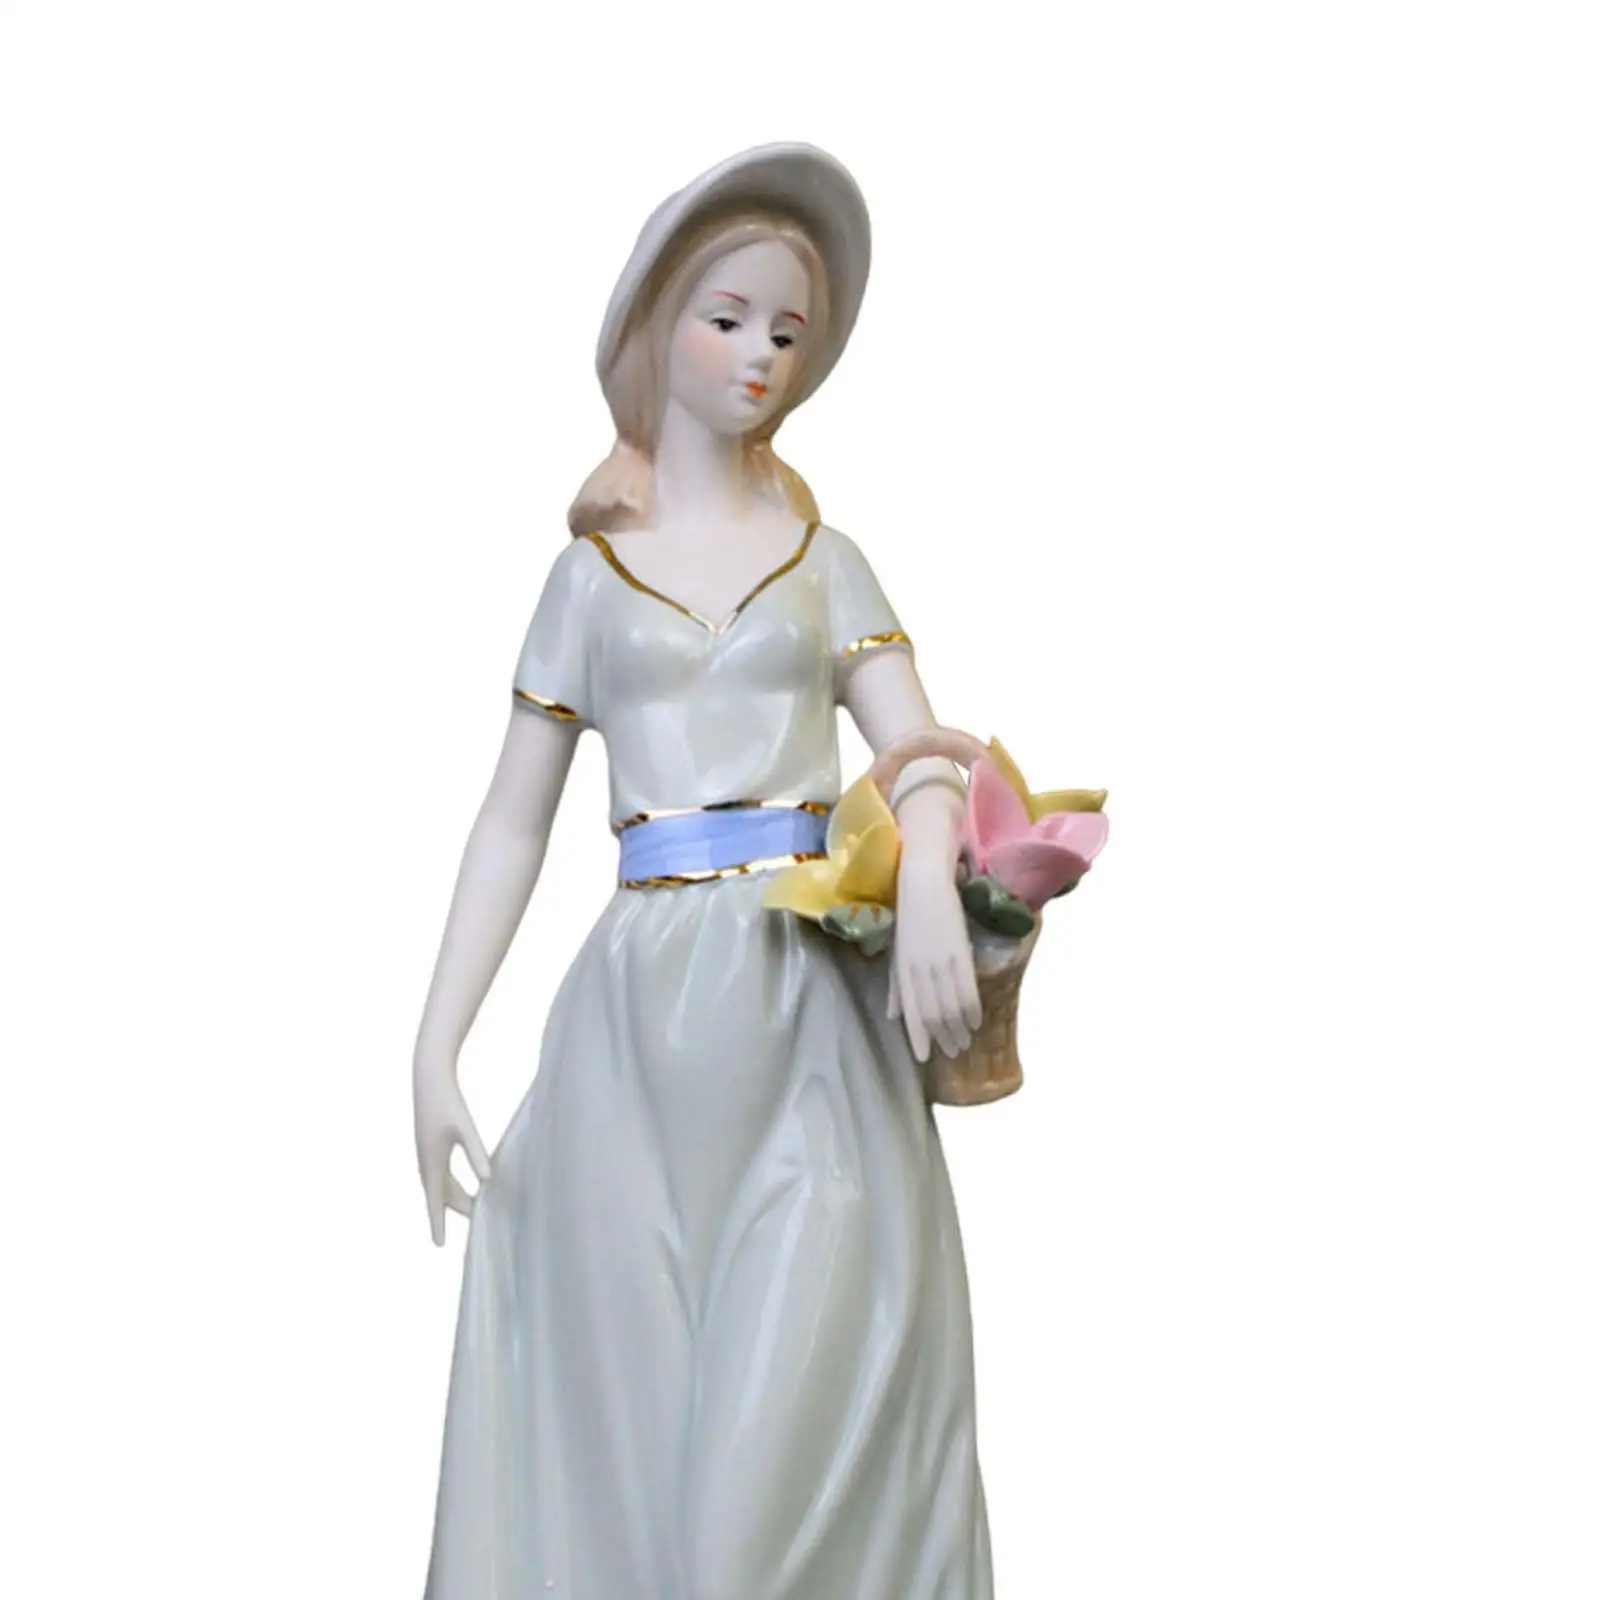 Figurka dziewczyny porcelanowa figurka słodka nowoczesna figurka dekoracyjna porcelana figurka dekoracja domu do biura regał na stół